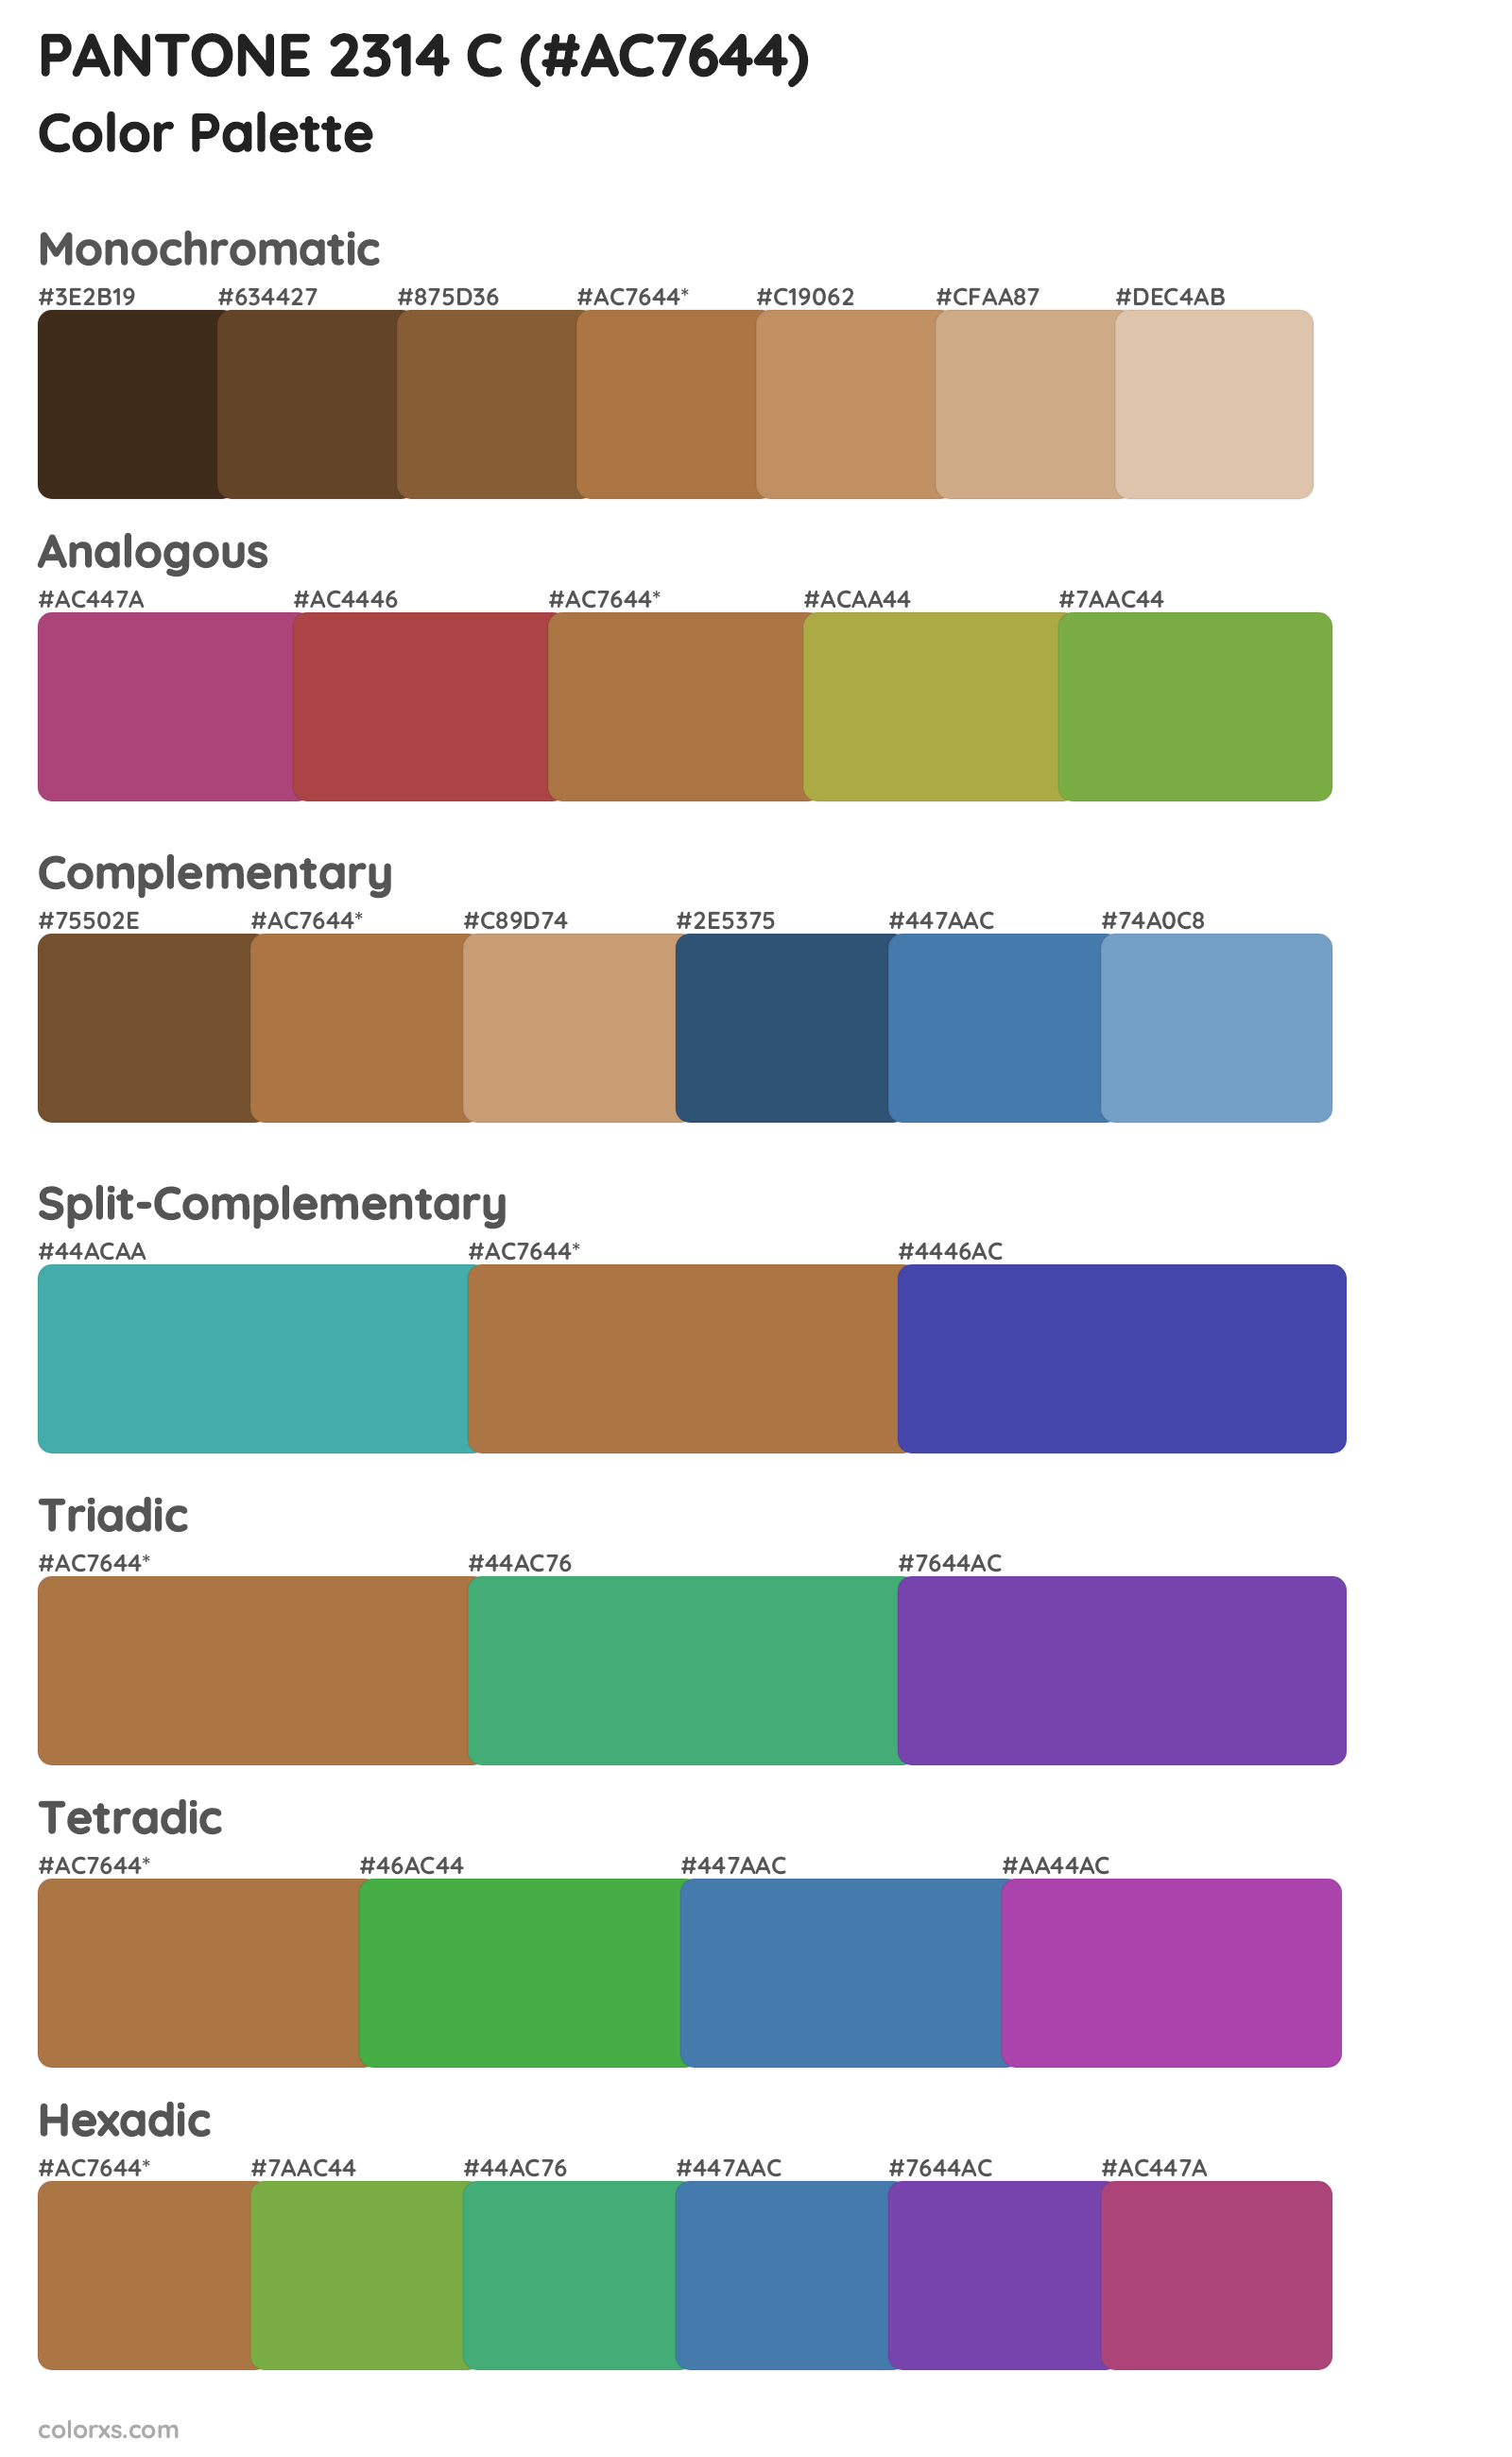 PANTONE 2314 C Color Scheme Palettes